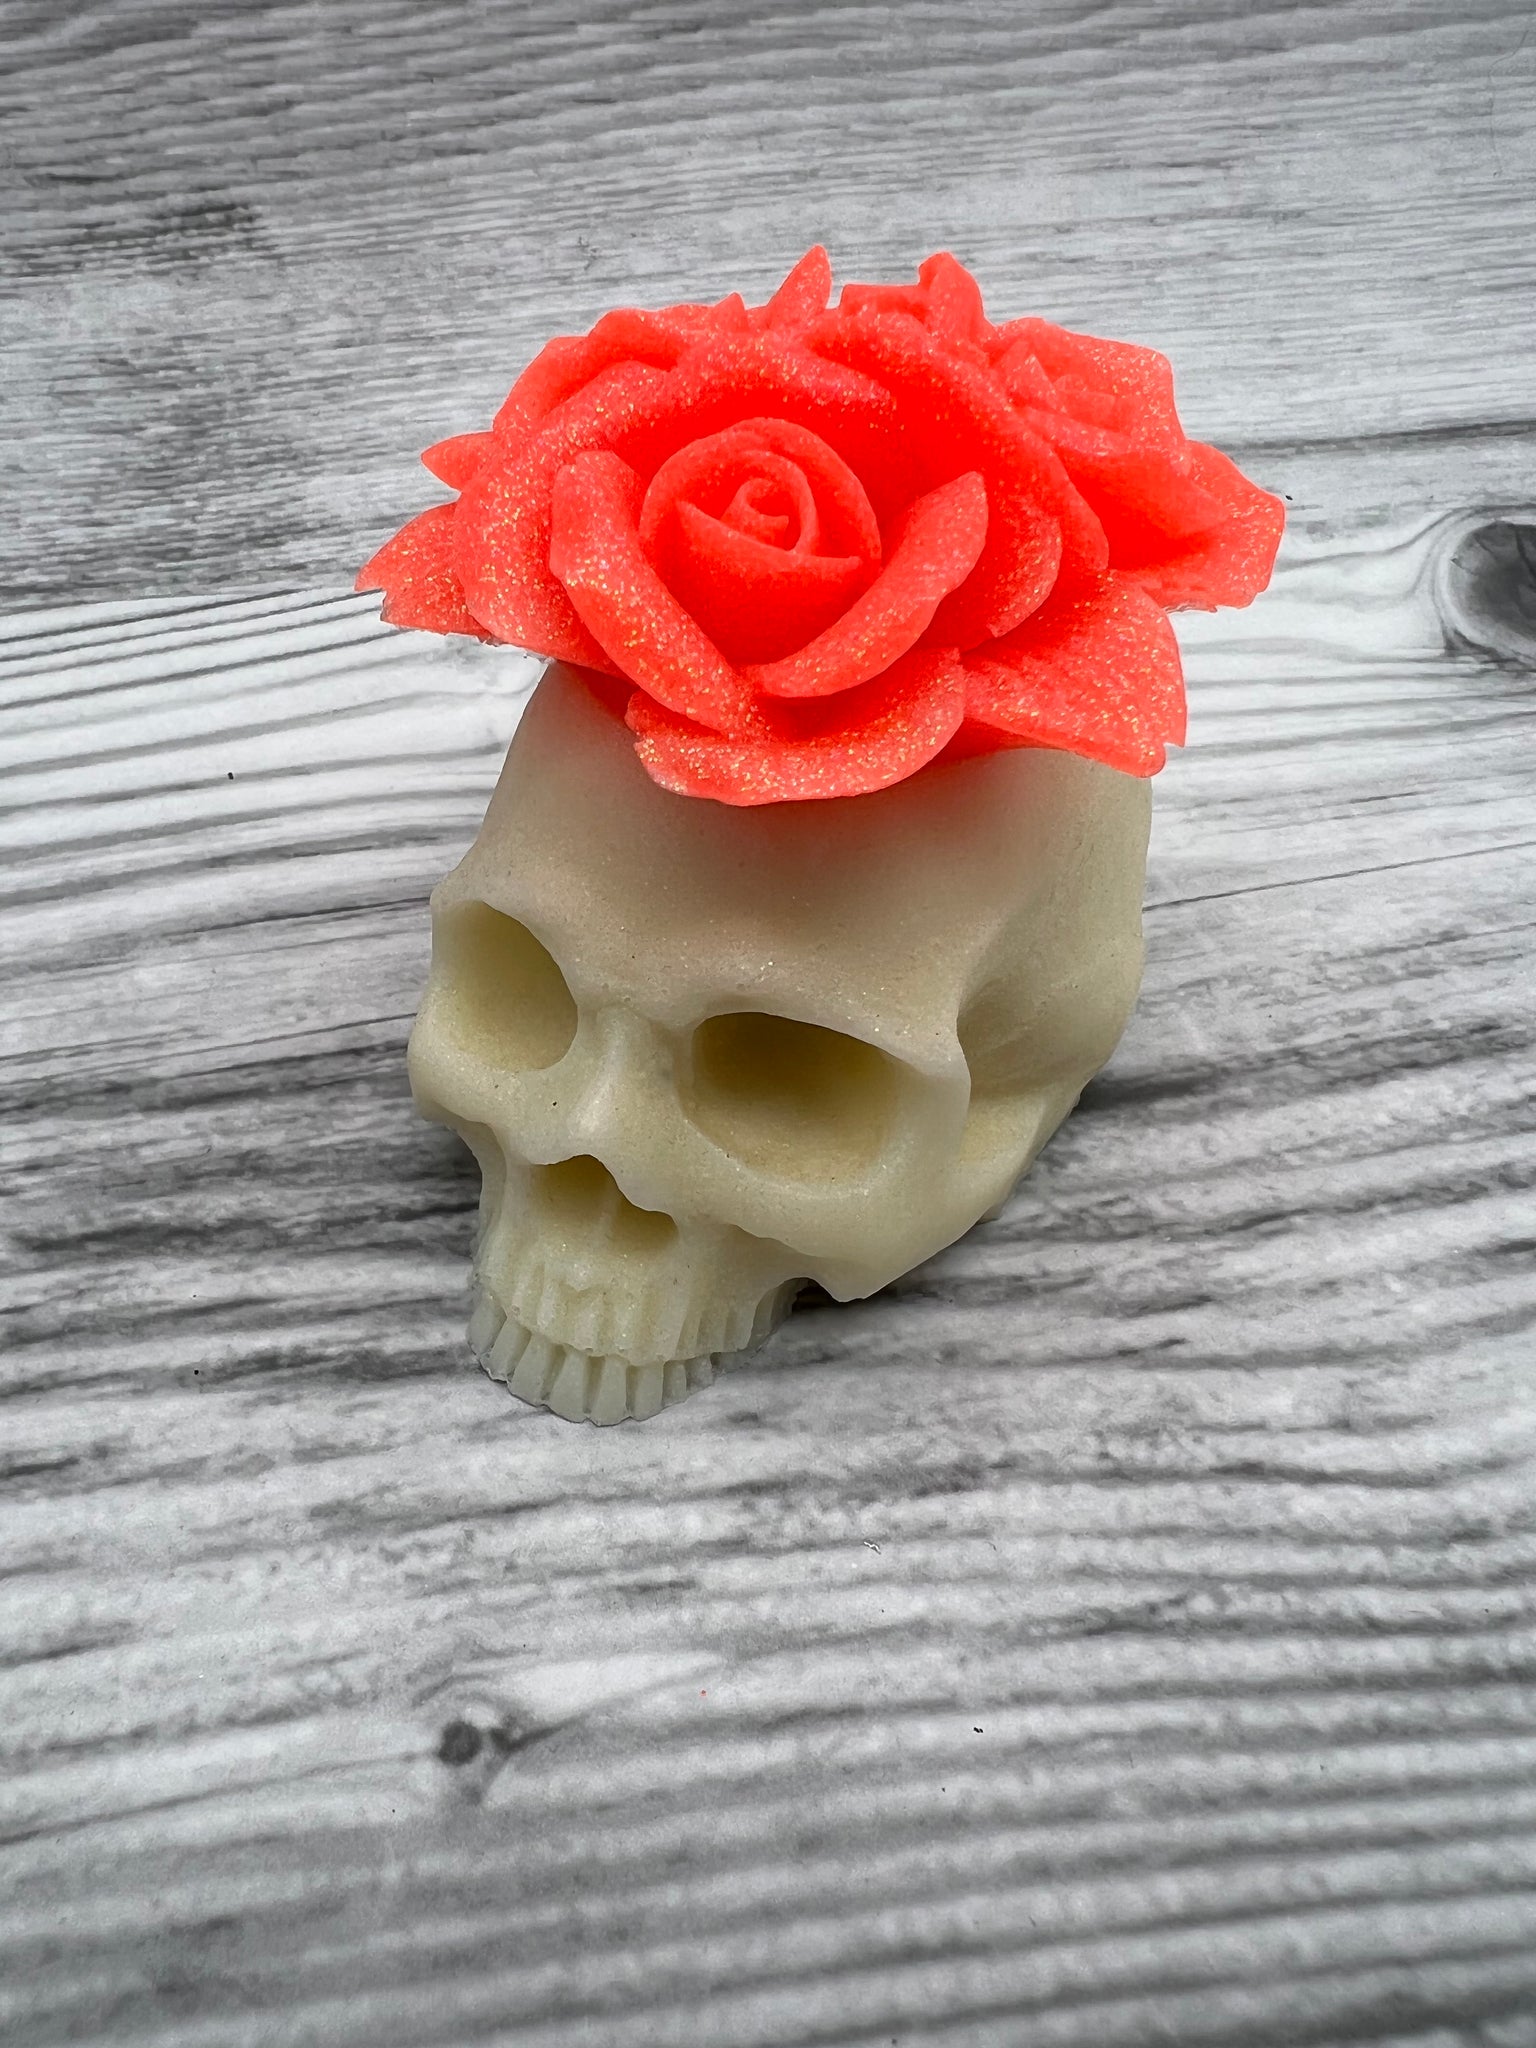 3D Skull Rose